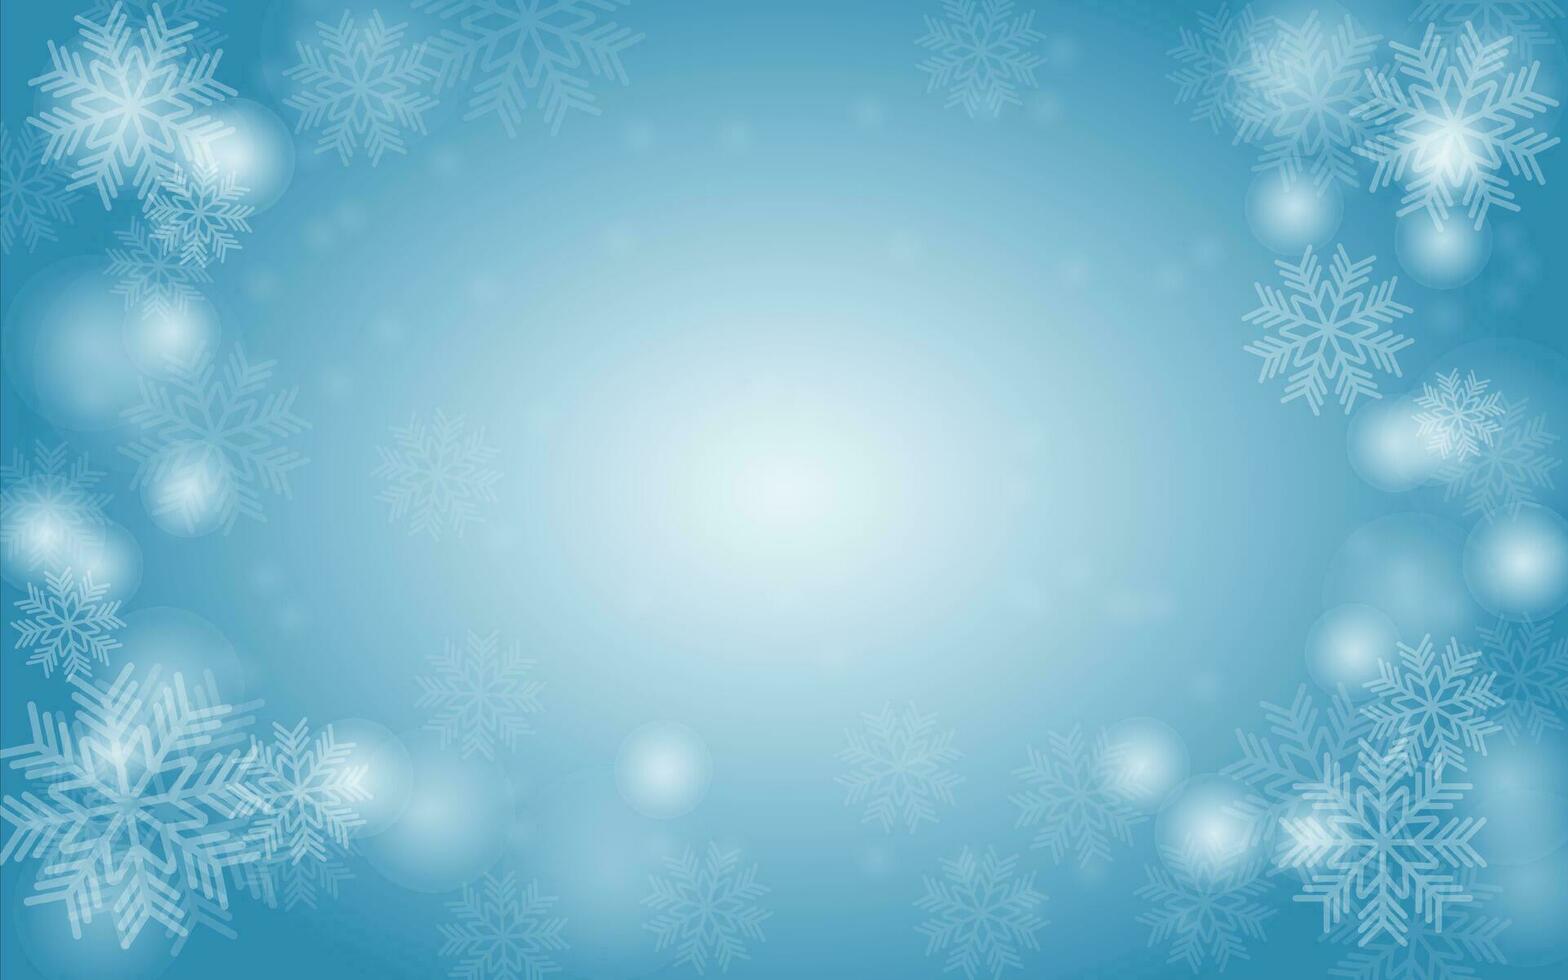 a requintado floco de neve fundo ilustração ofertas uma sereno inverno ambiente. delicadamente trabalhada padrões e gelado matizes evocar a Magia do queda de neve, ideal para sazonal desenhos, e cumprimento cartões. vetor